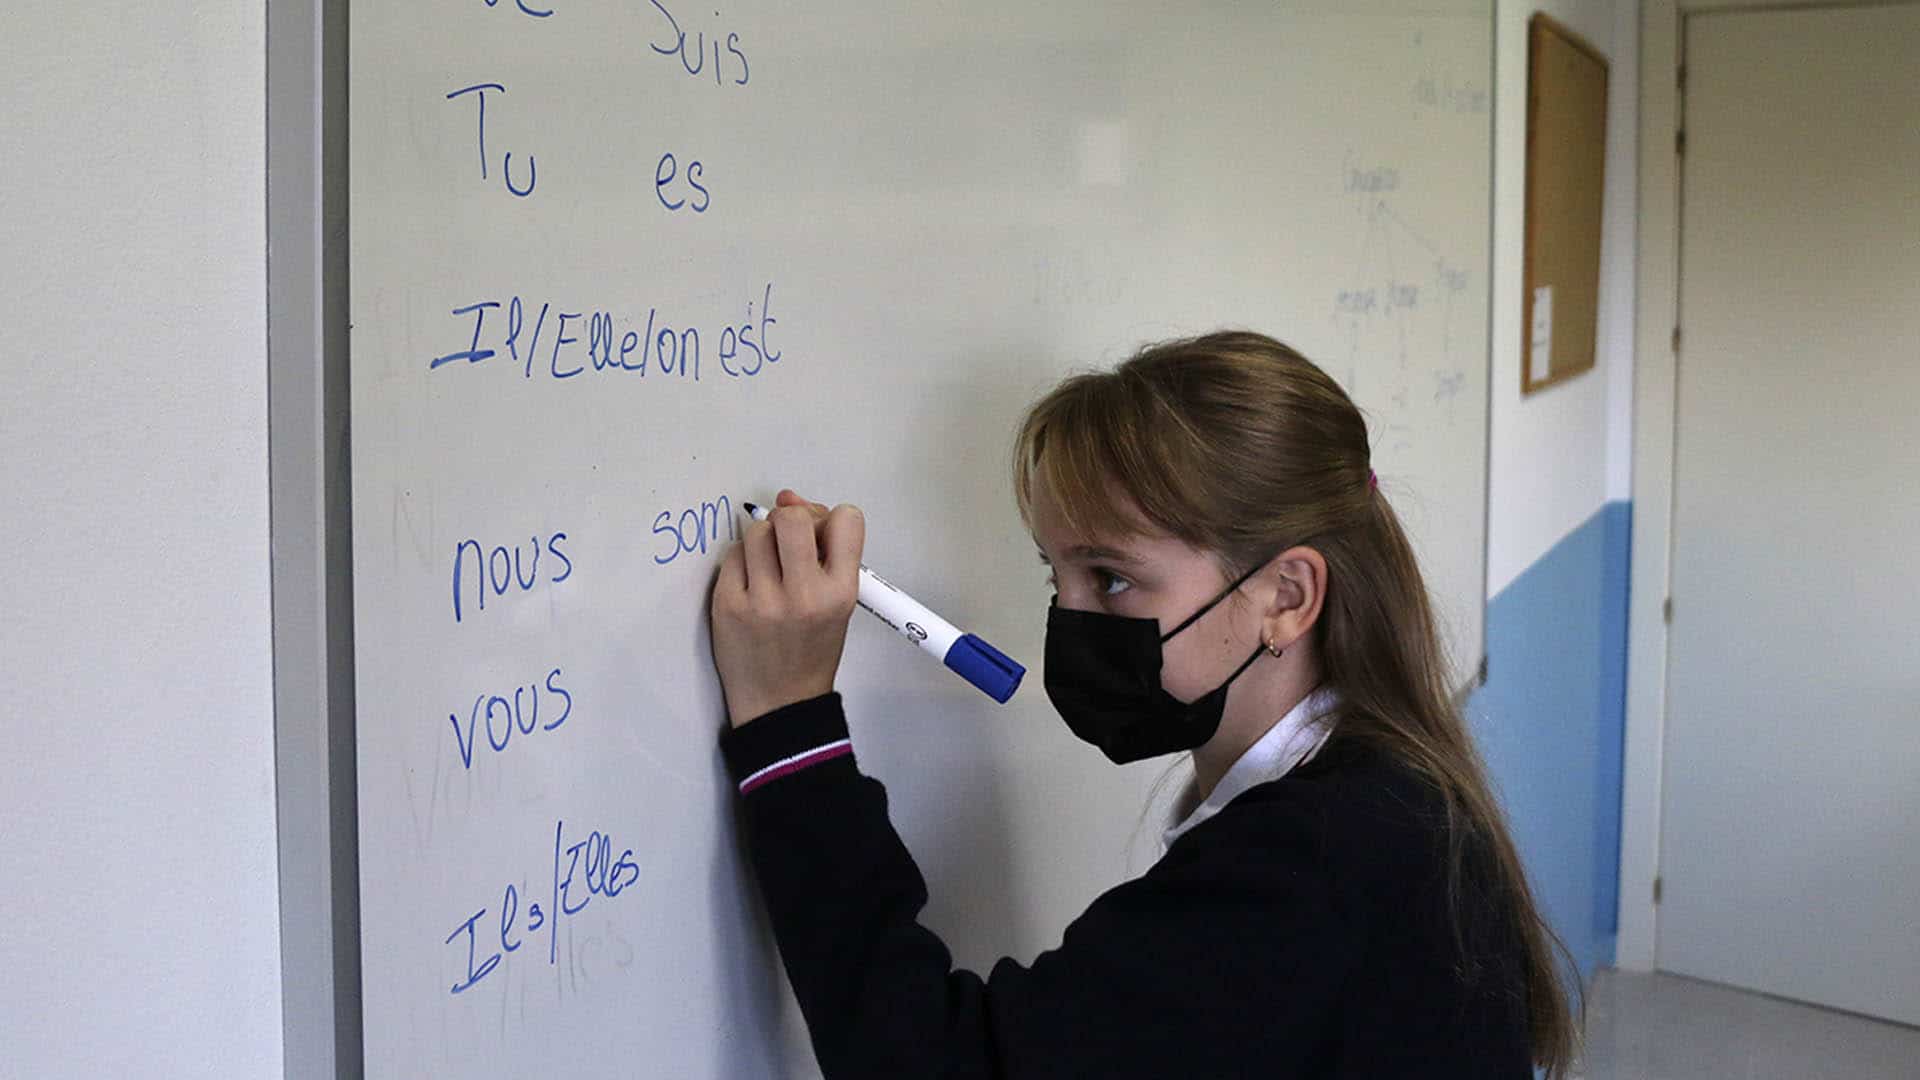 Alumna escribe el verbo être en la pizarra.